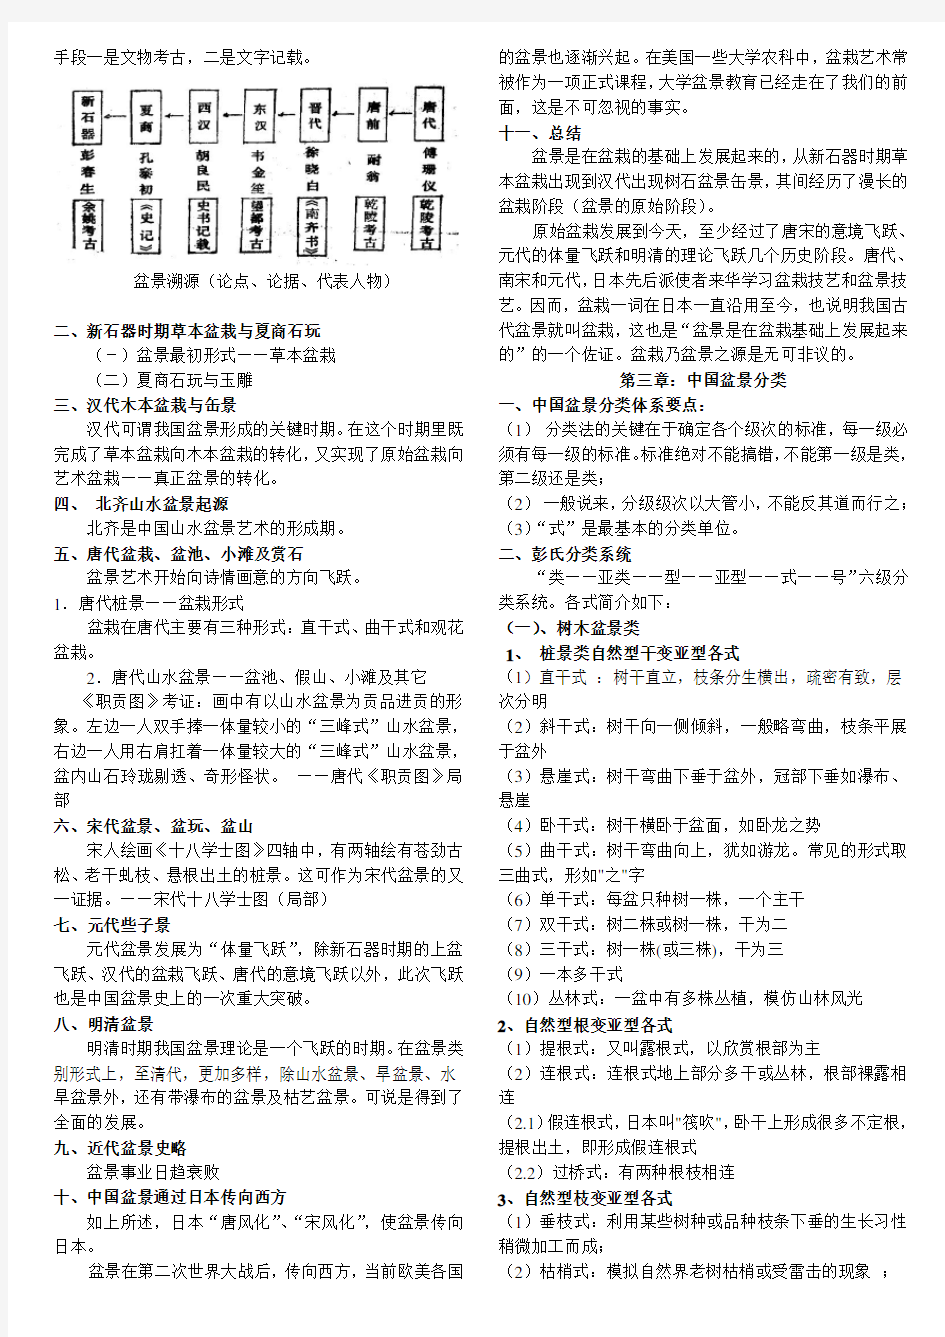 北京林业大学盆景学考试提纲